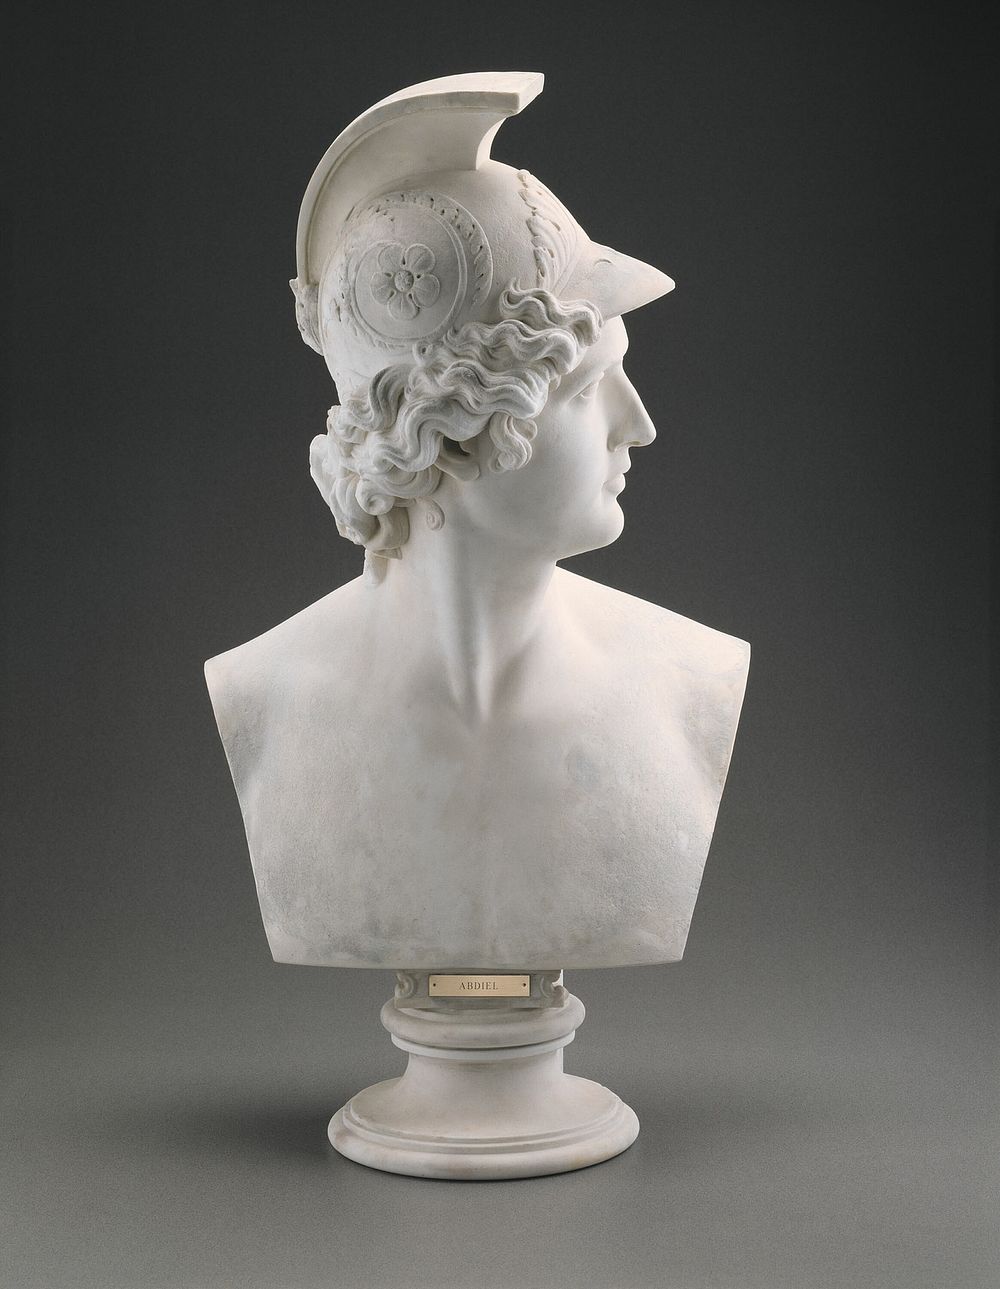 Abdiel by Horatio Greenough (Sculptor)